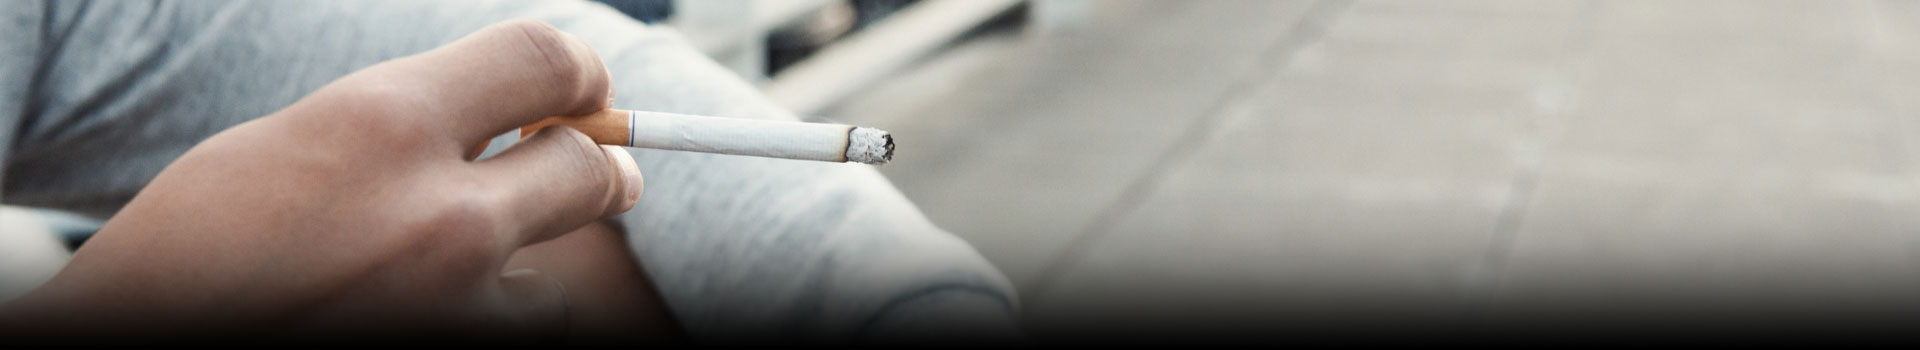 Nicotine | Smoking & Vaping